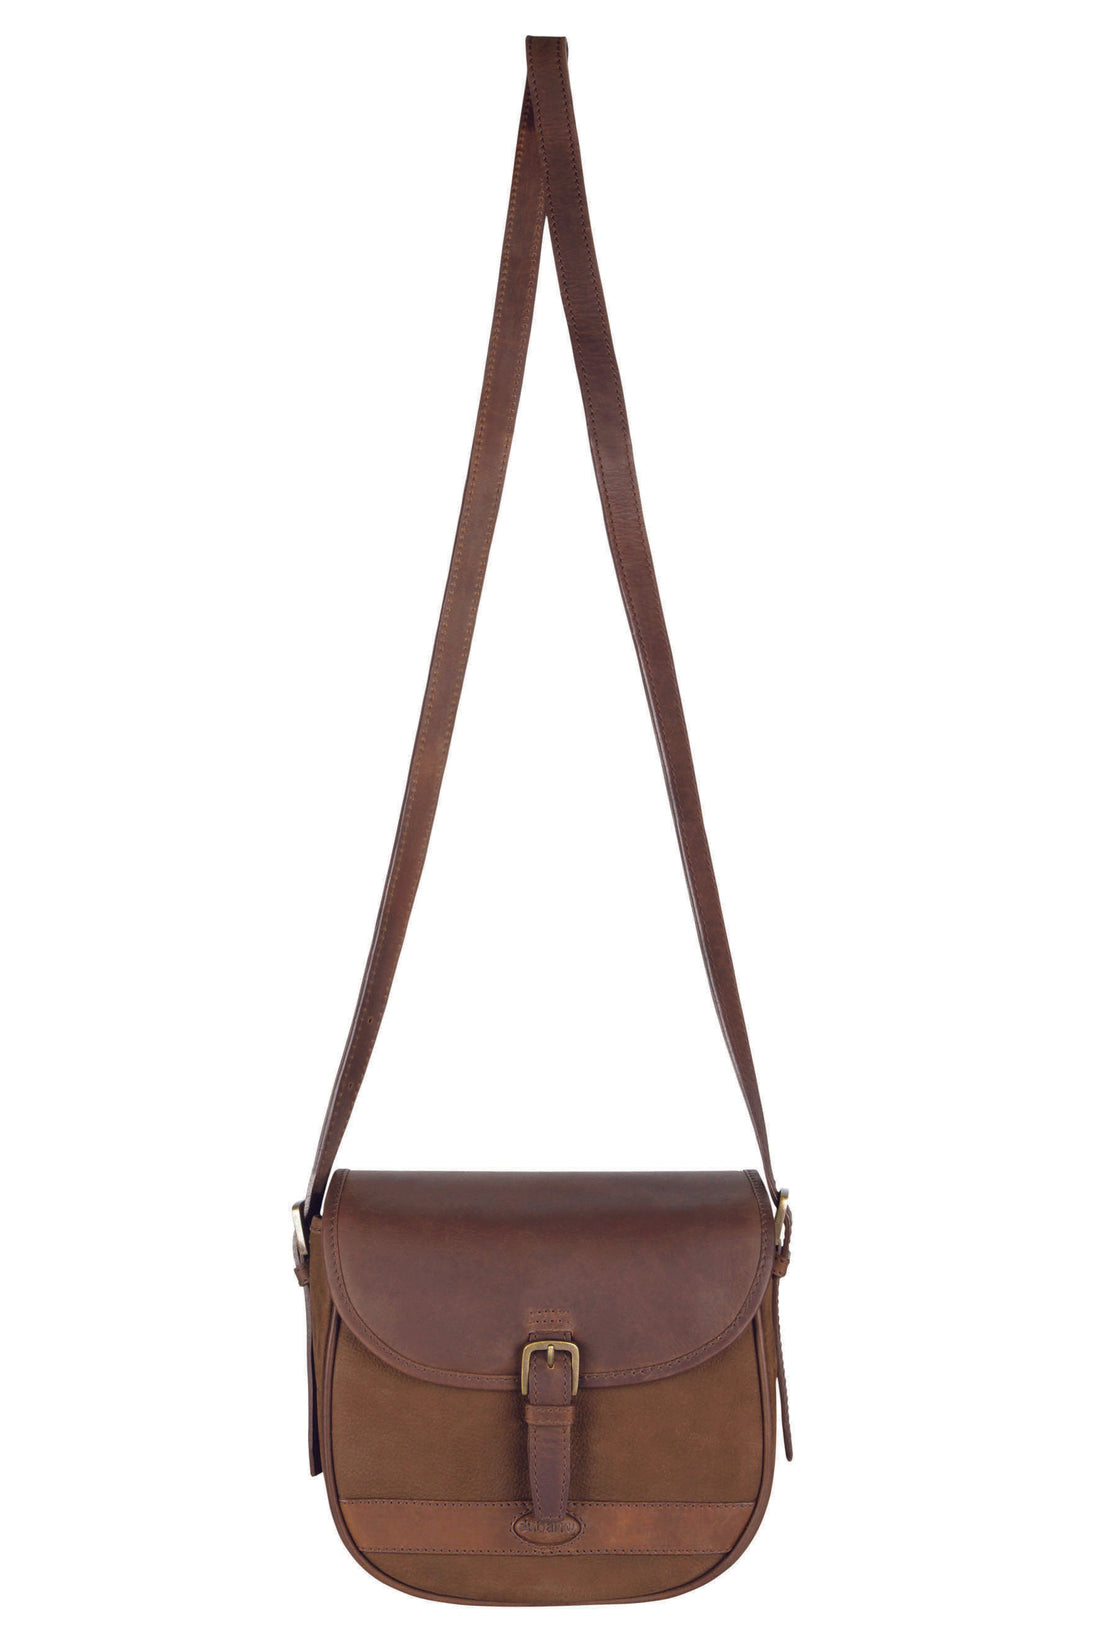 Clara Leather Saddle Style Bag - Walnut